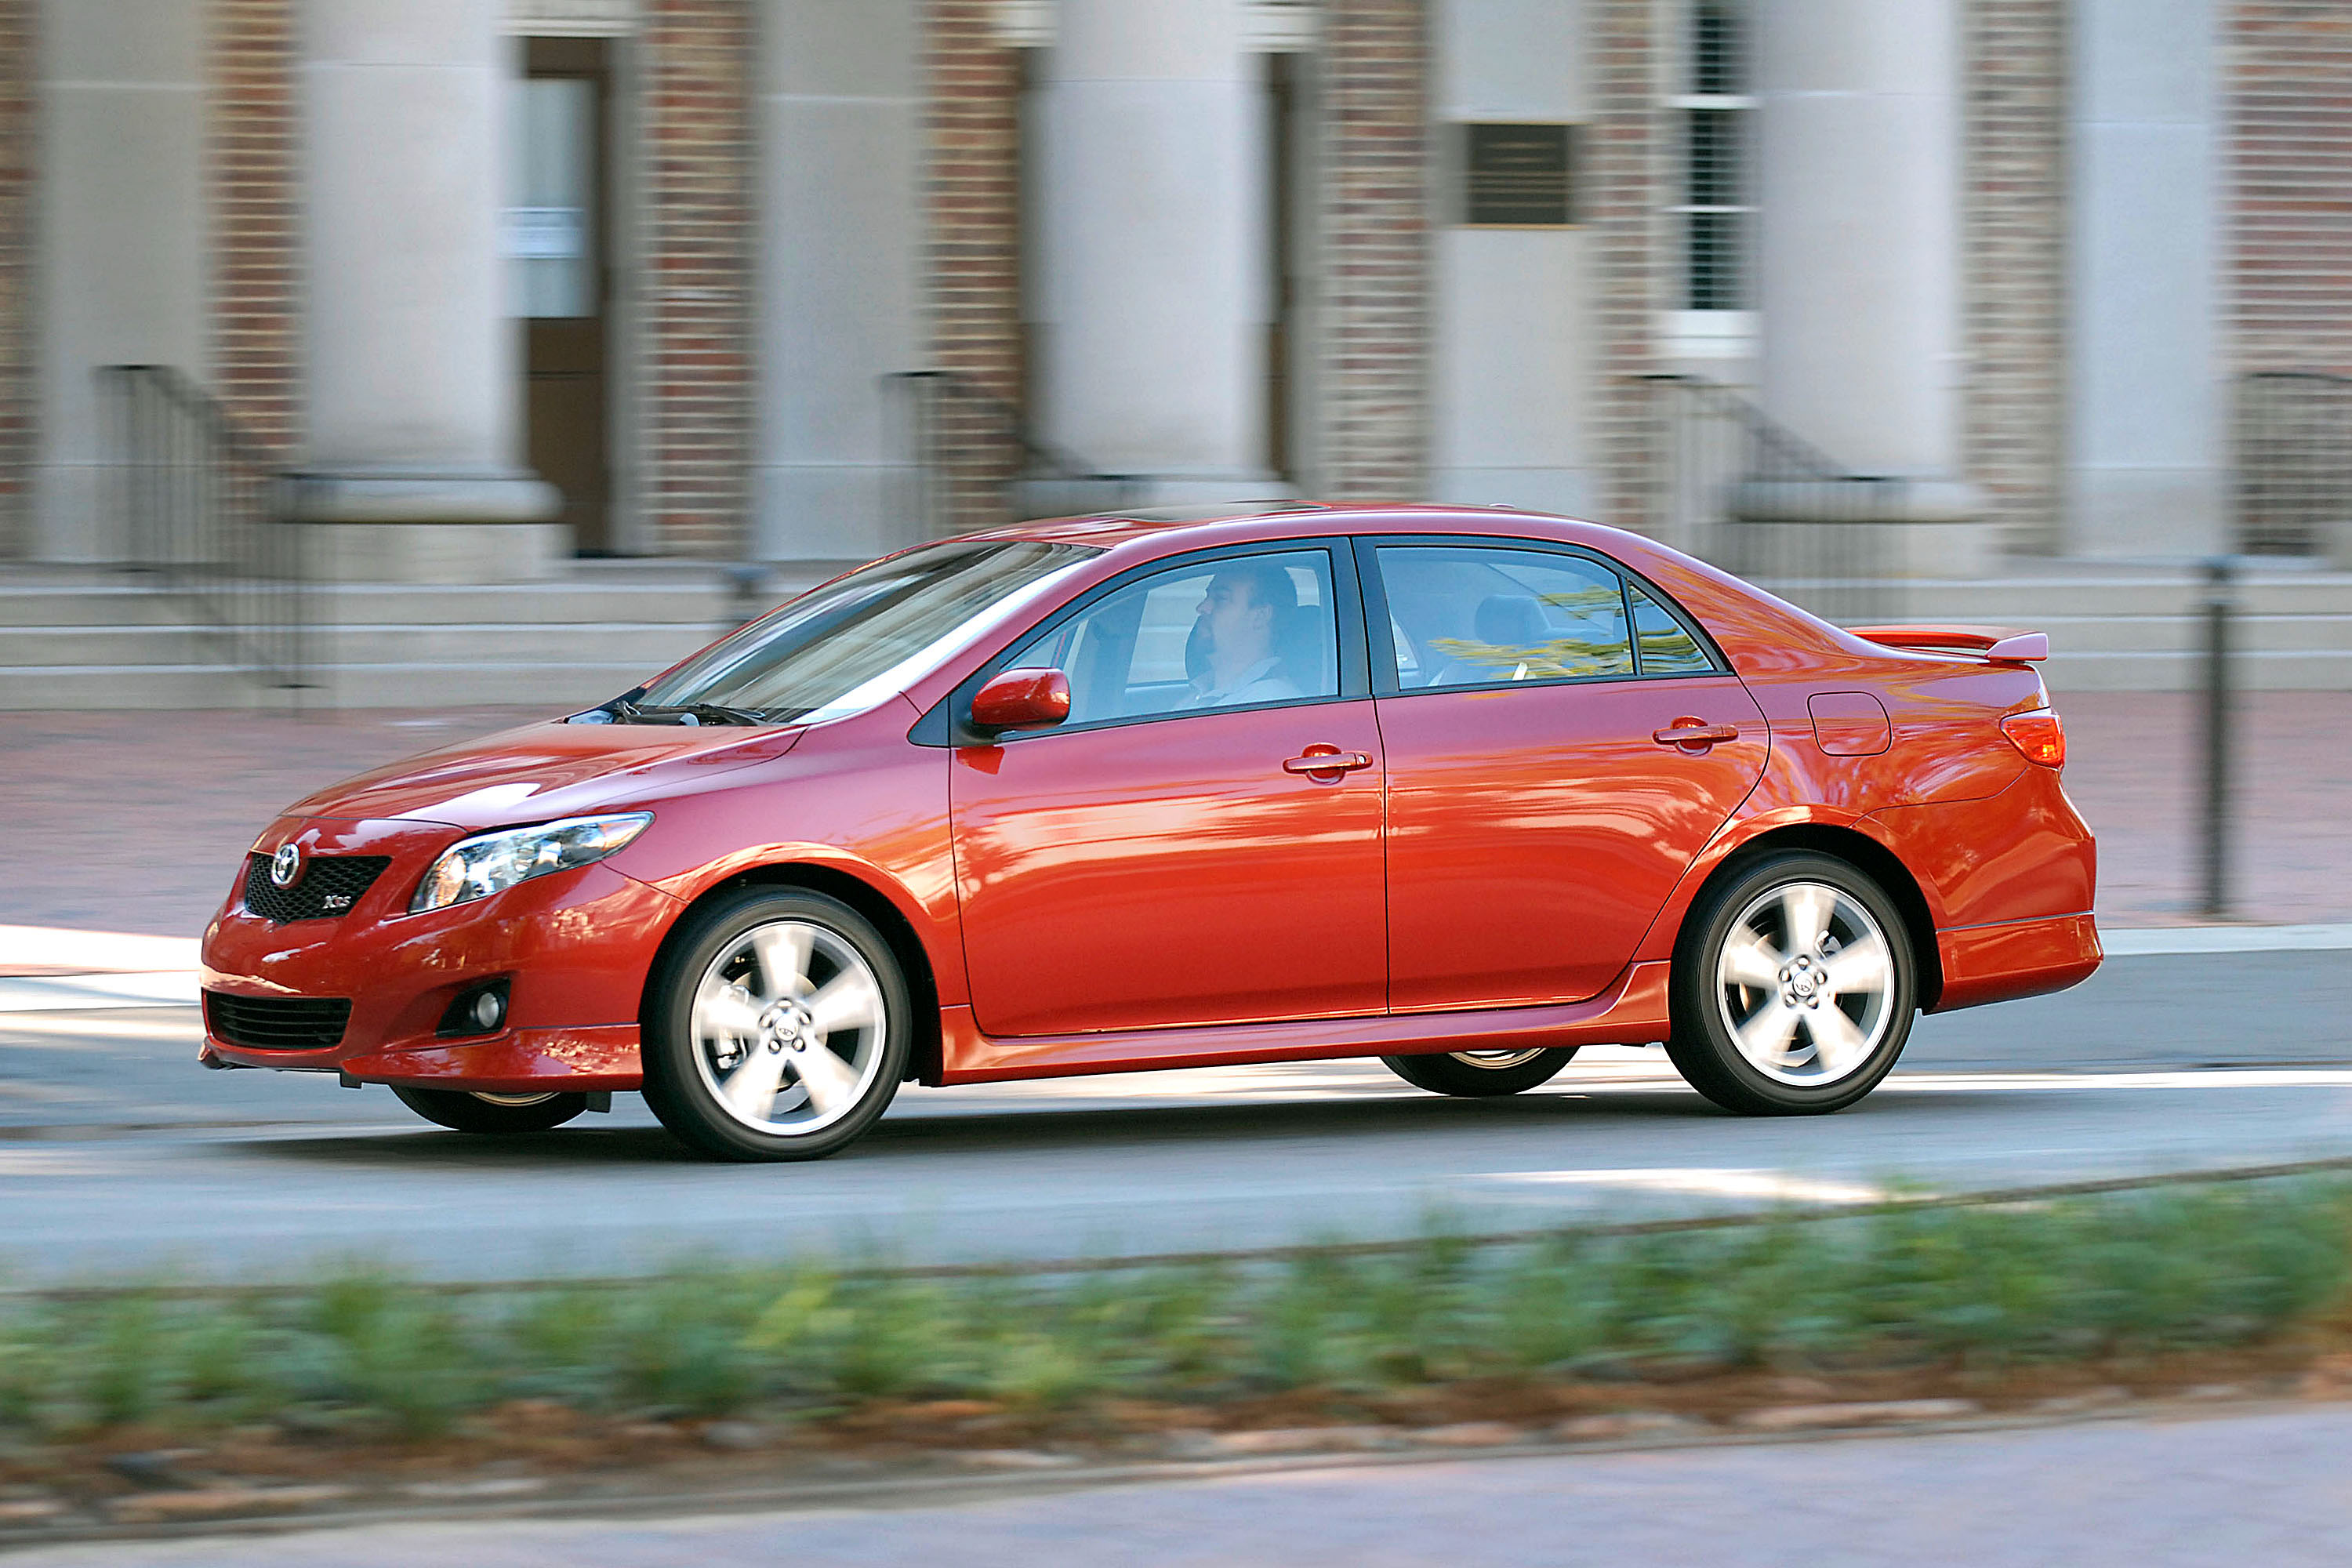 Für die Gesamtzuverlässigkeit und Sicherheit erhielt der Toyota Corolla eine Bewertung von 4,5 von 5